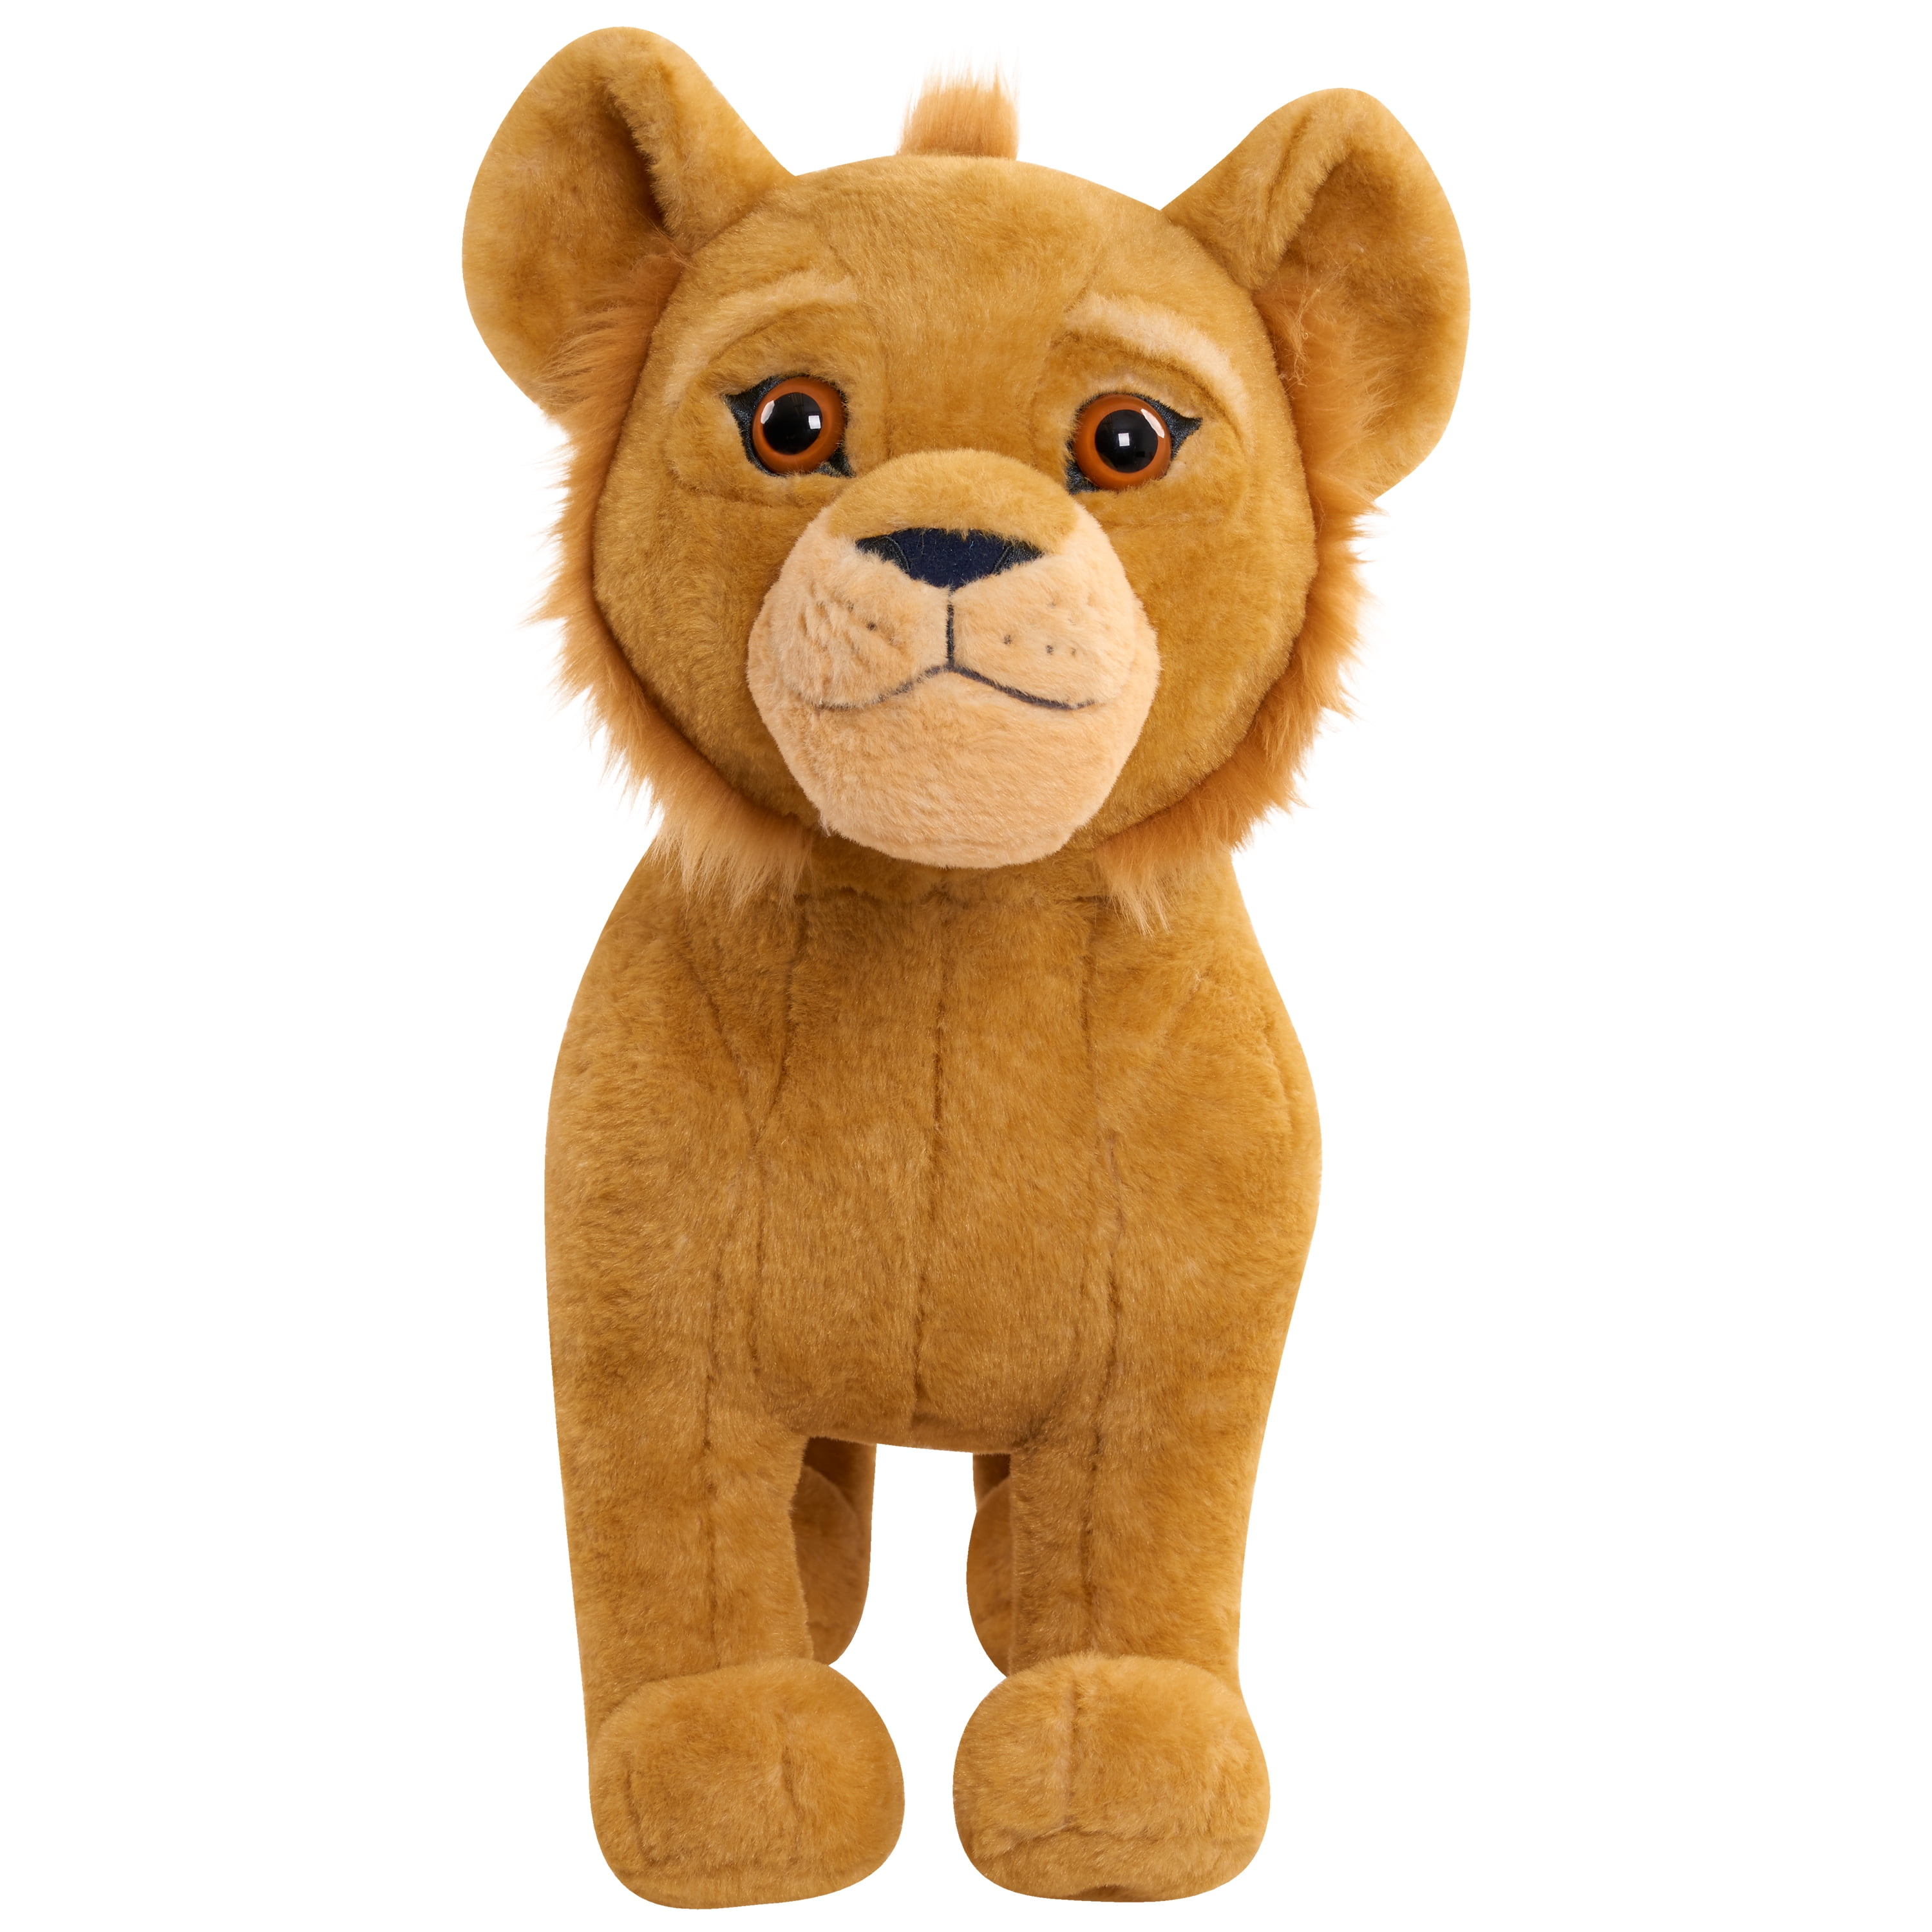 Funko Plush: 2019, Toy NEUF Lion King-Simba 